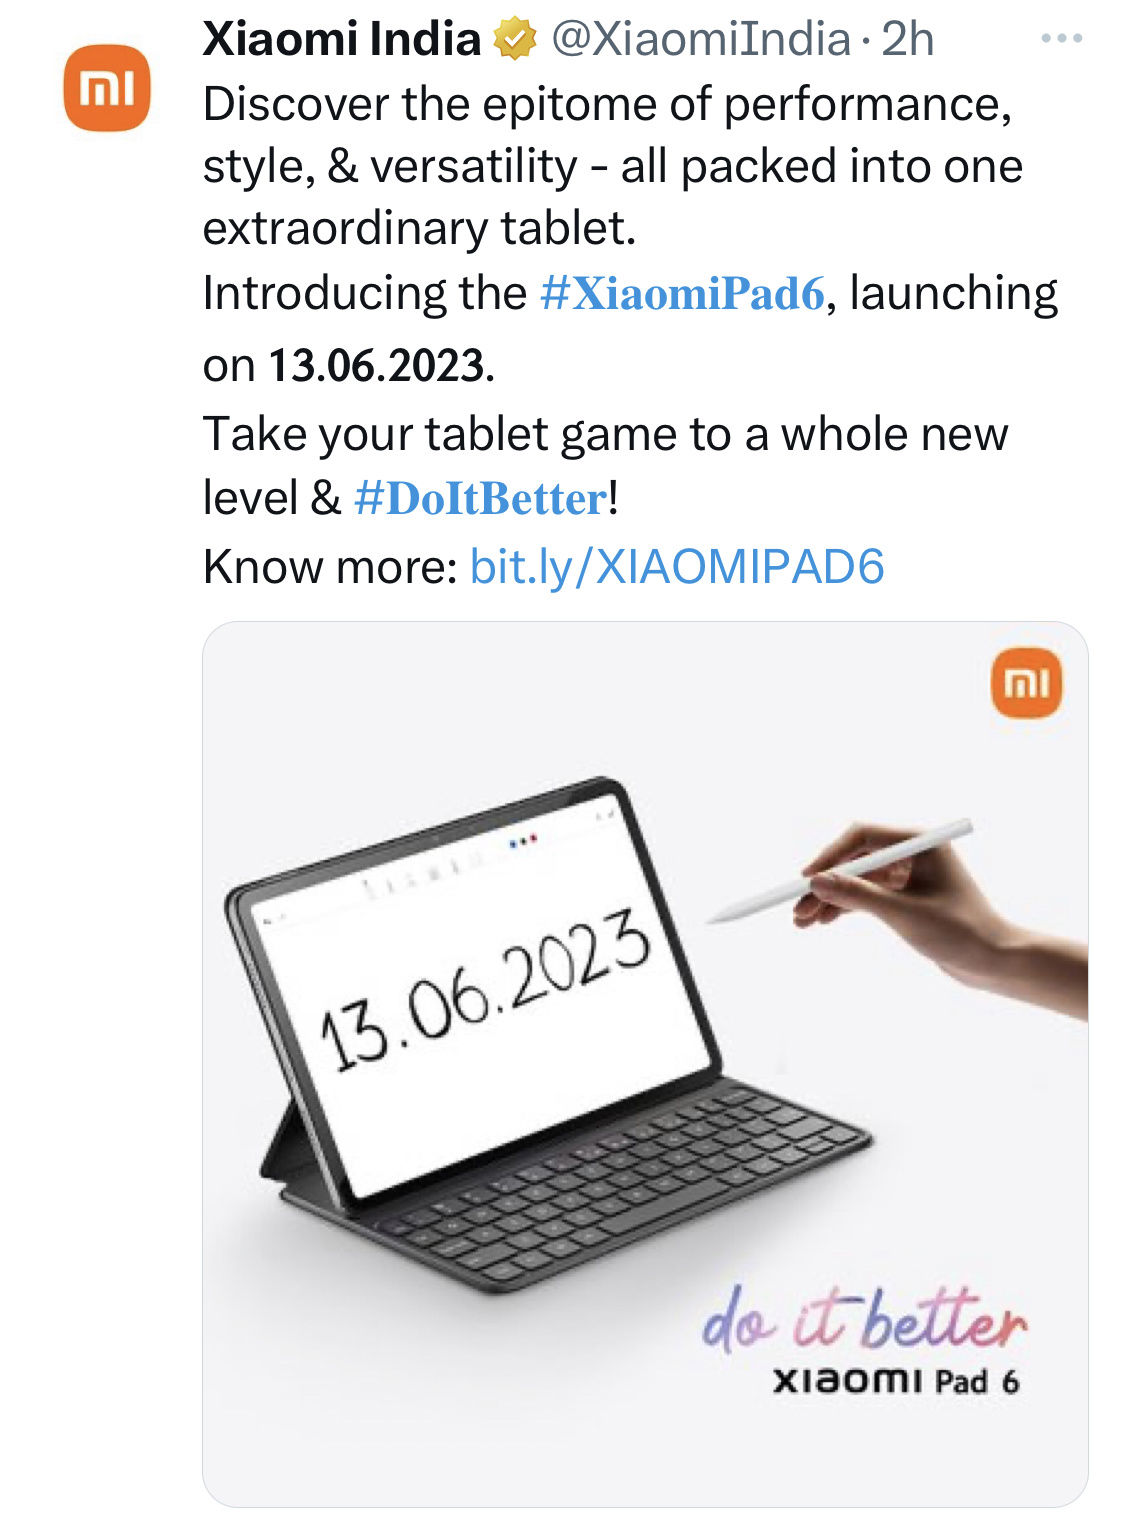 小米Pad 6 平板电脑 6 月 13 日在印度发布，搭载骁龙870处理器